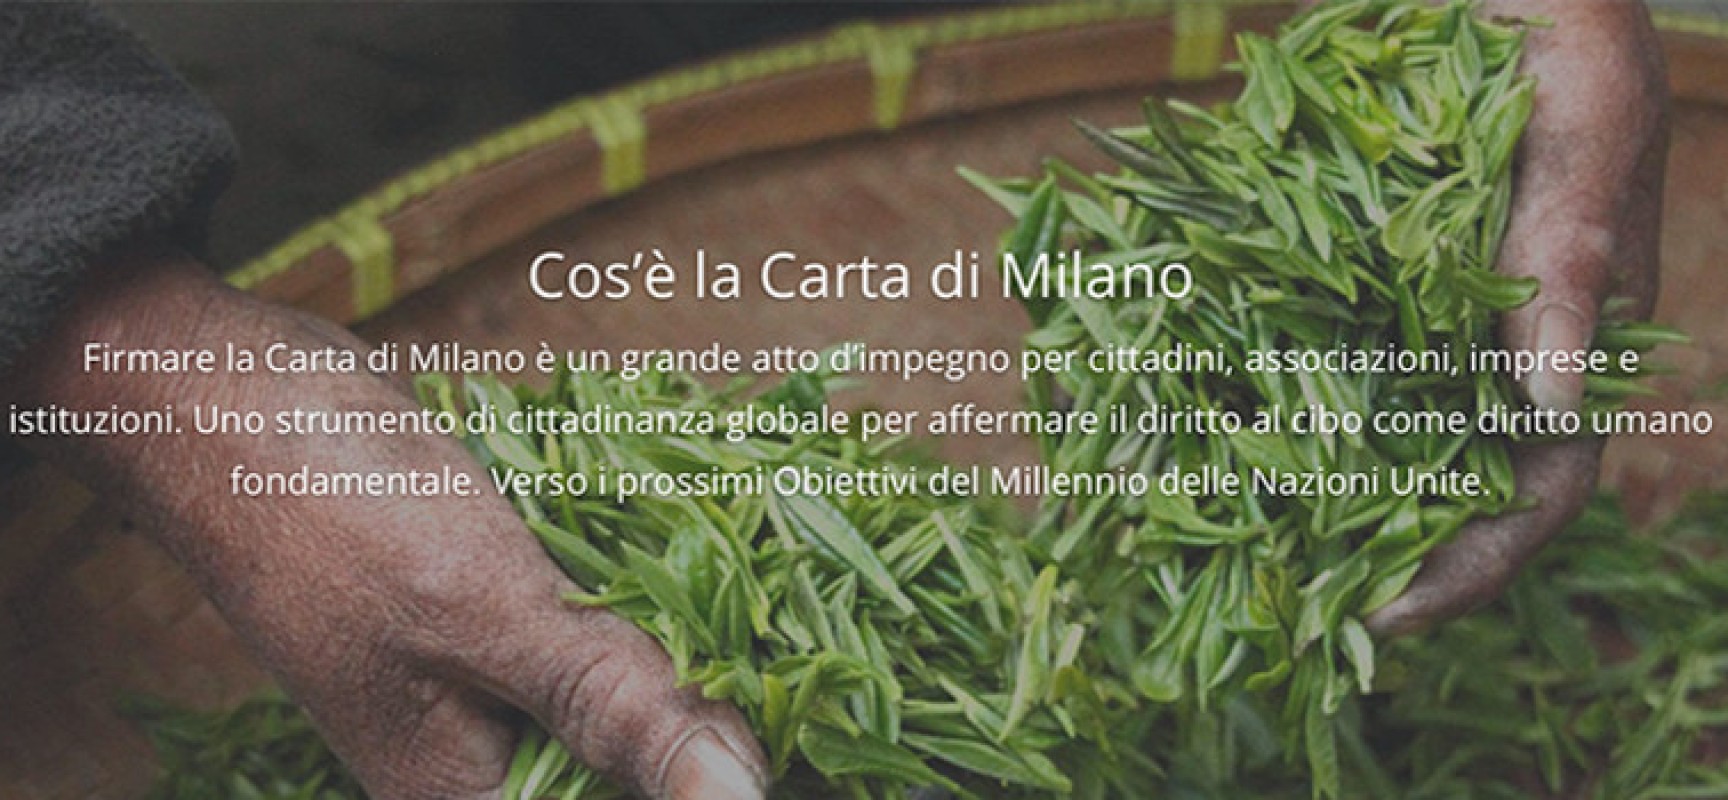 Il Comune di Bisceglie aderisce alla Carta di Milano, obiettivo combattere la fame nel mondo